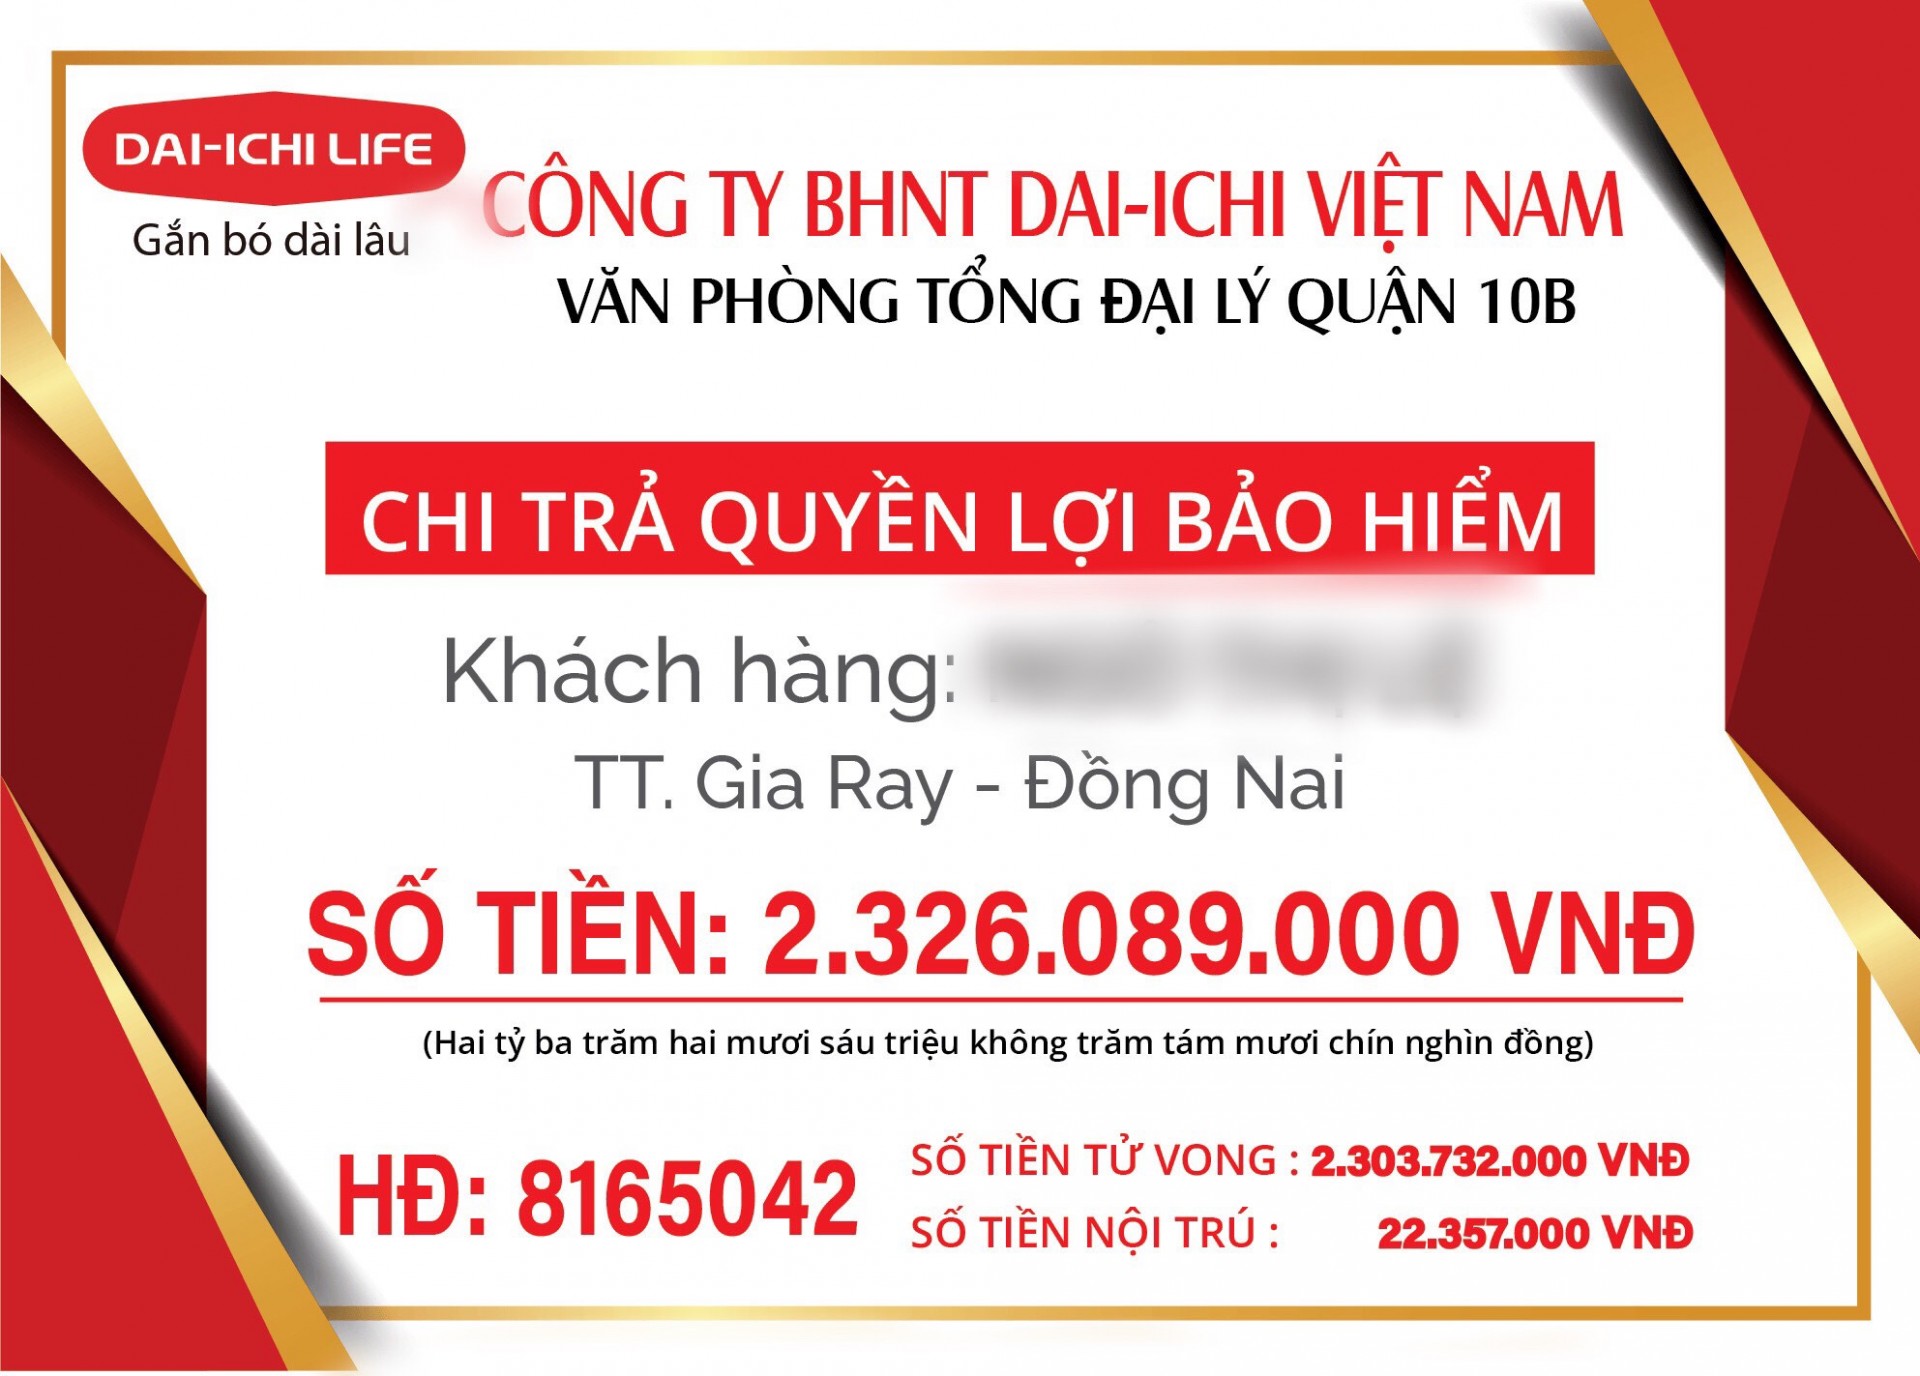 Bảo hiểm nhân thọ DAI-ICHI Việt Nam chi trả hơn 2,3 tỷ đồng quyền lợi tử vong cho khách hàng